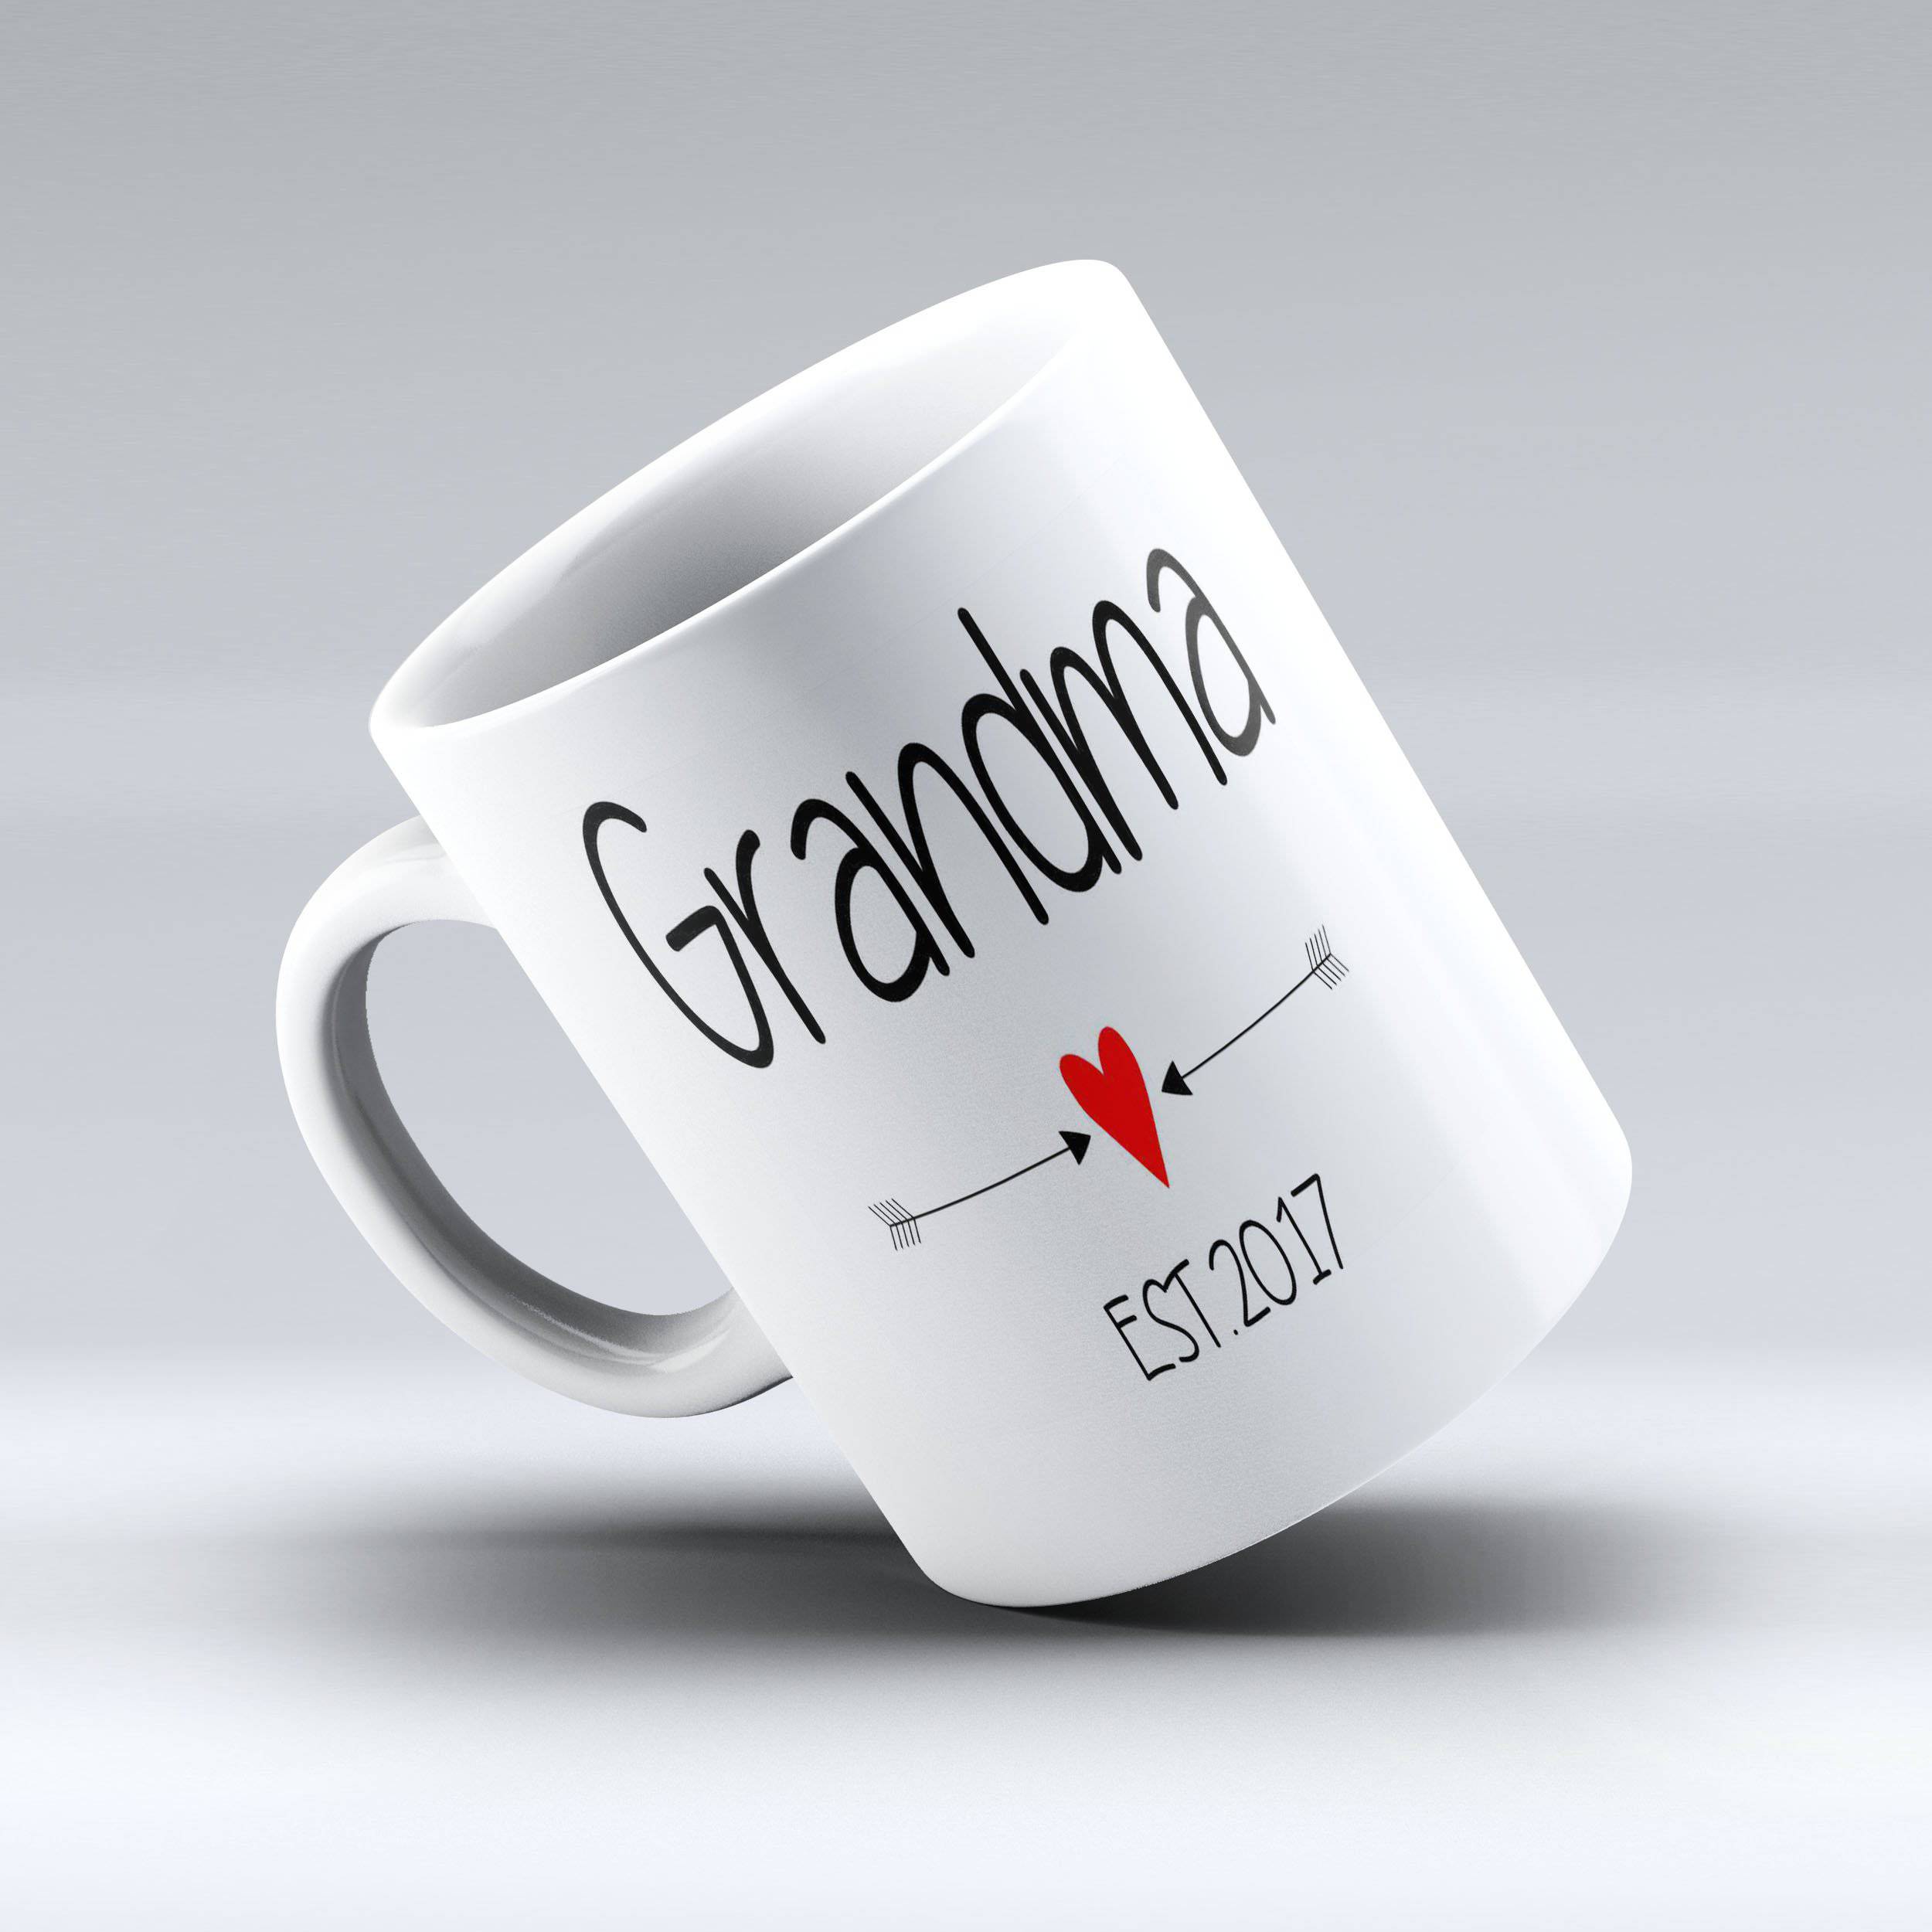 Grandma Established - Grandma Established Coffee Mug | 150TEES - 150 TEES GIFTS & MORE